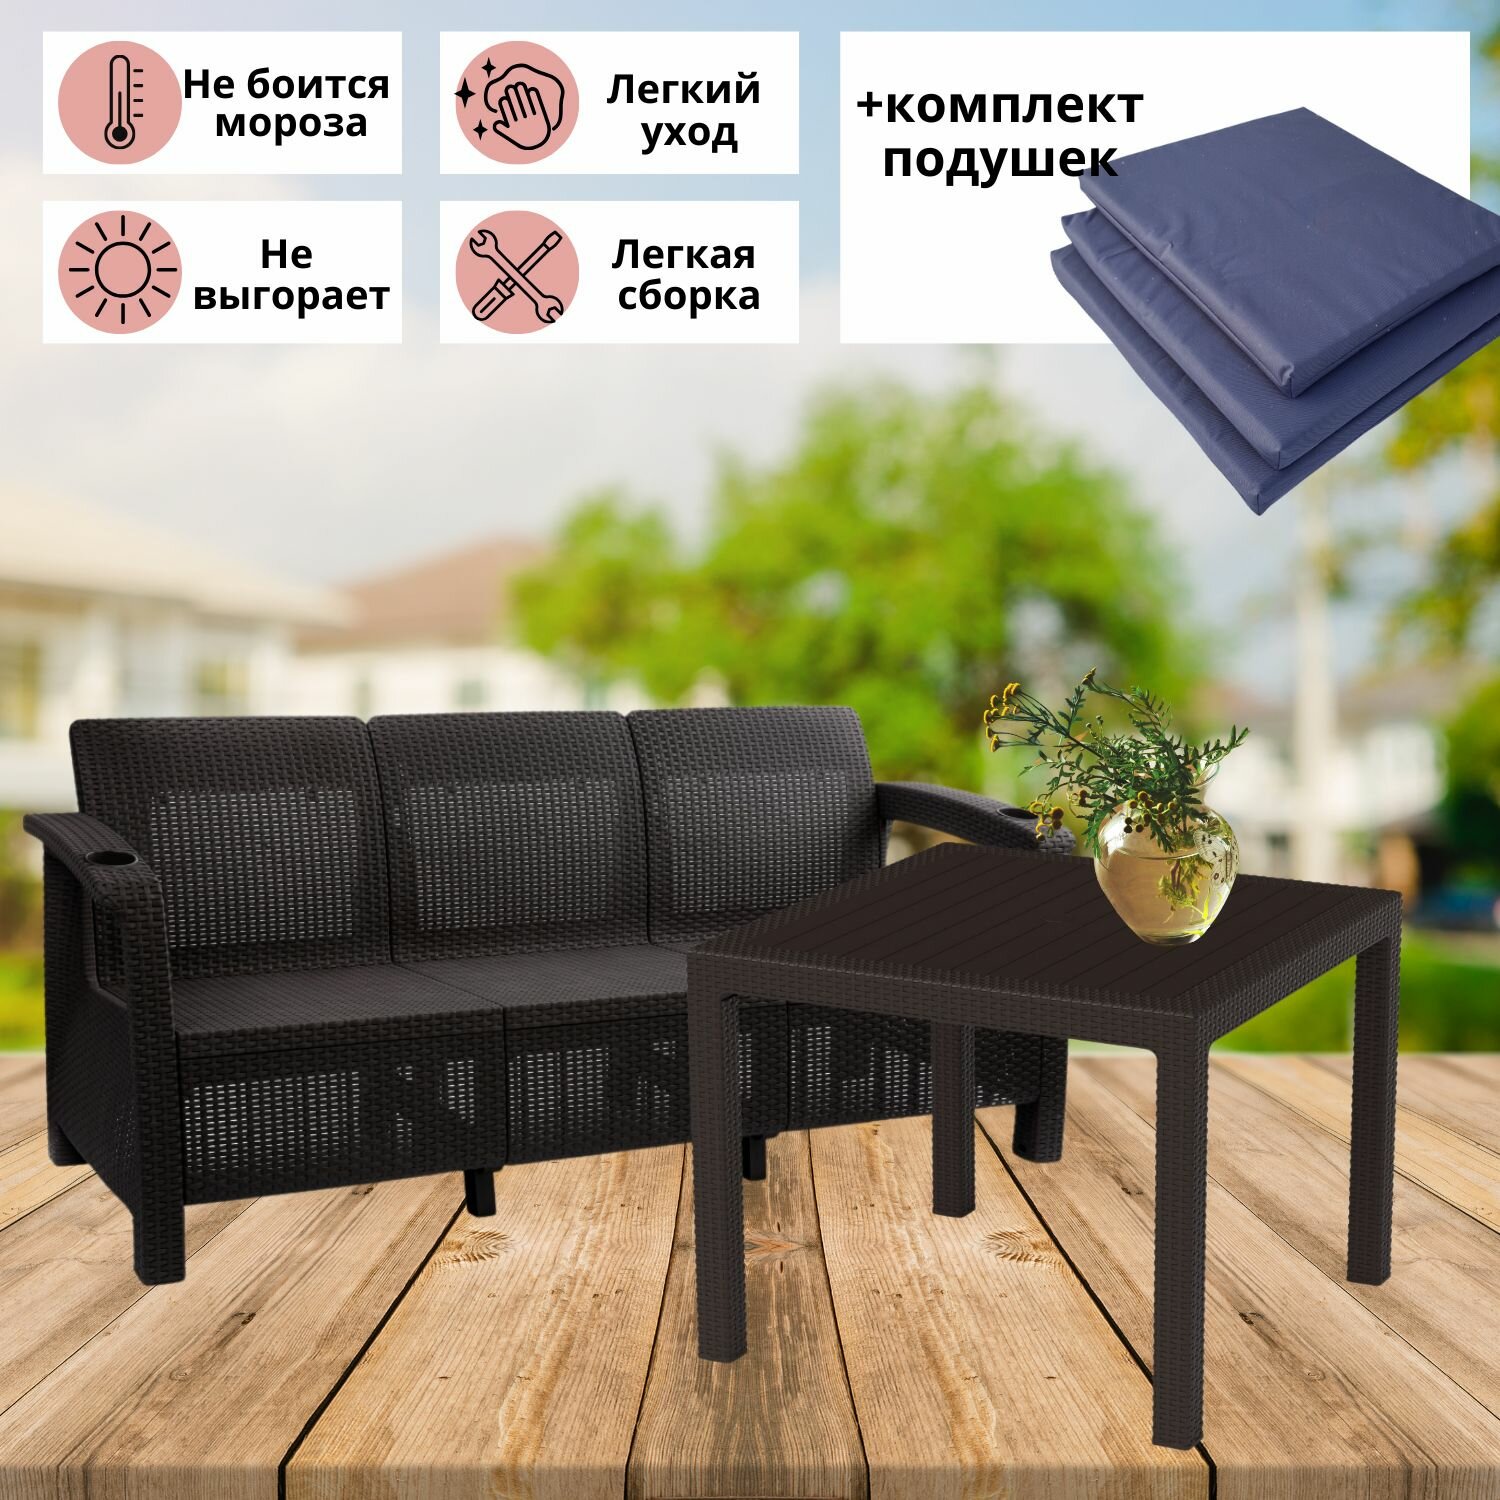 Садовая мебель. Комплект Фазенда-3 трехместный диван и обеденный стол, искуственный ротанг, мокко, темно-синие подушки